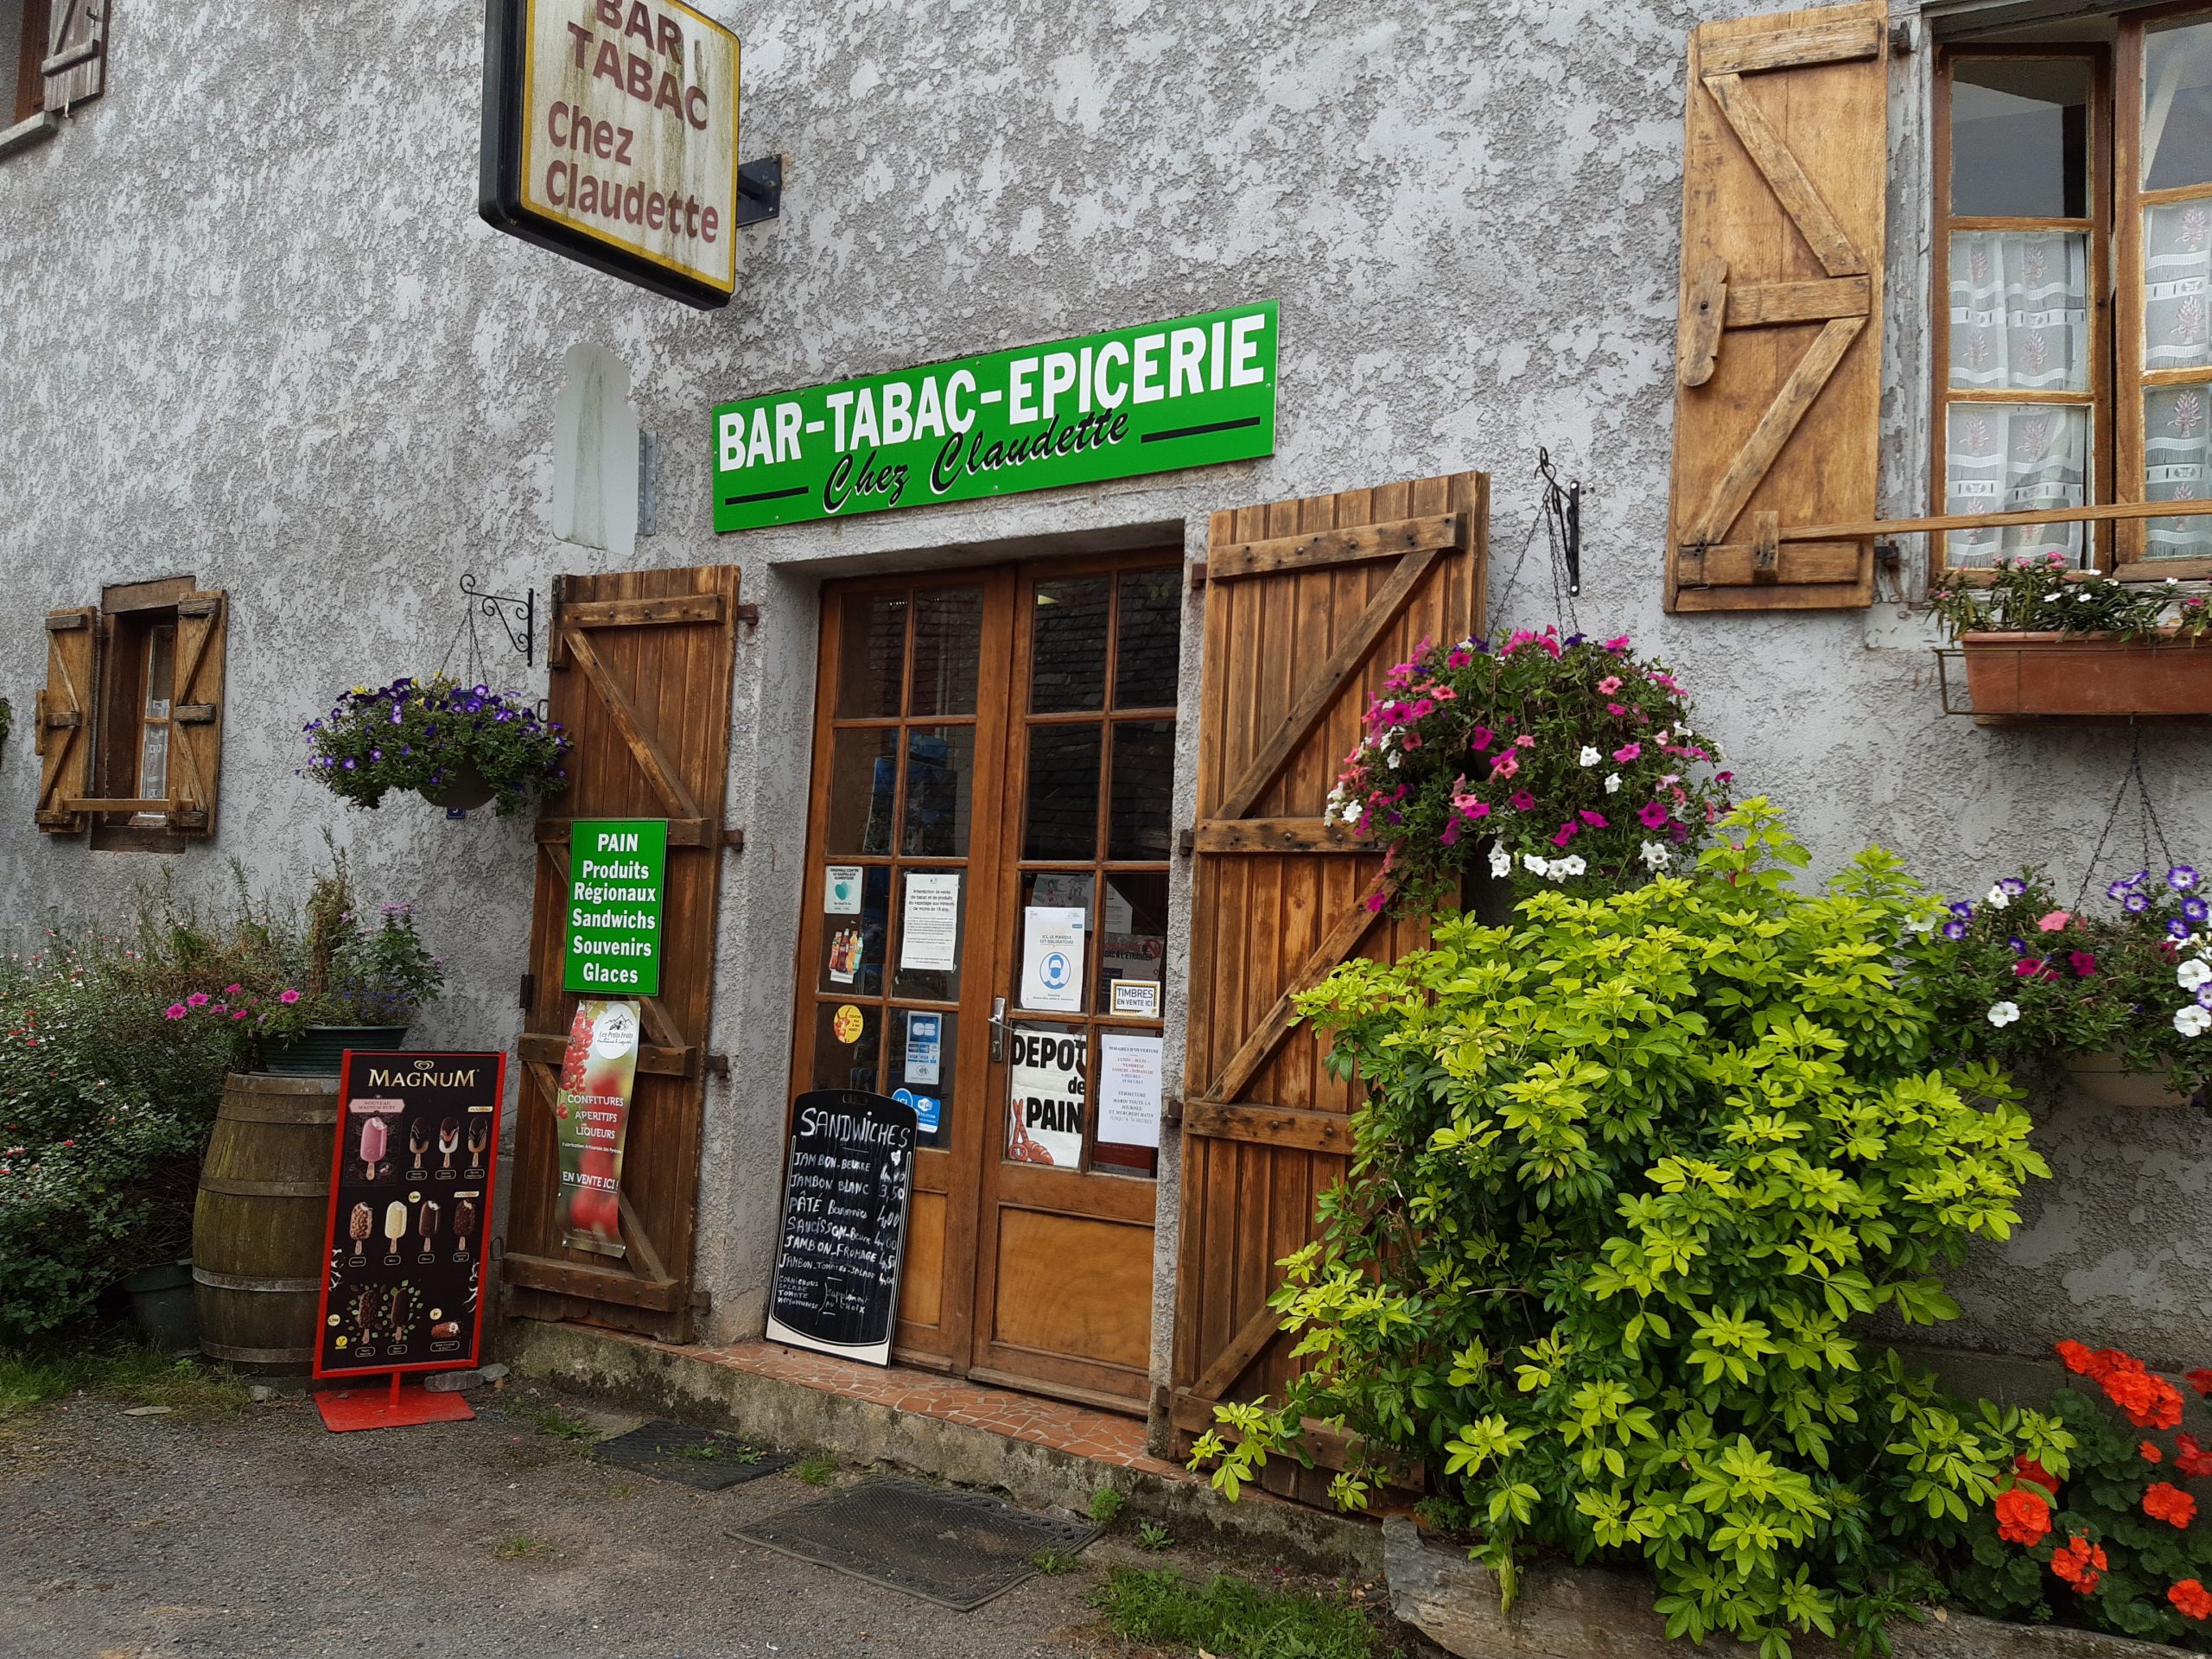 Chez-Claudette-Bar-tabac-epicerie-Laborde-devanture-centree-scaled-1